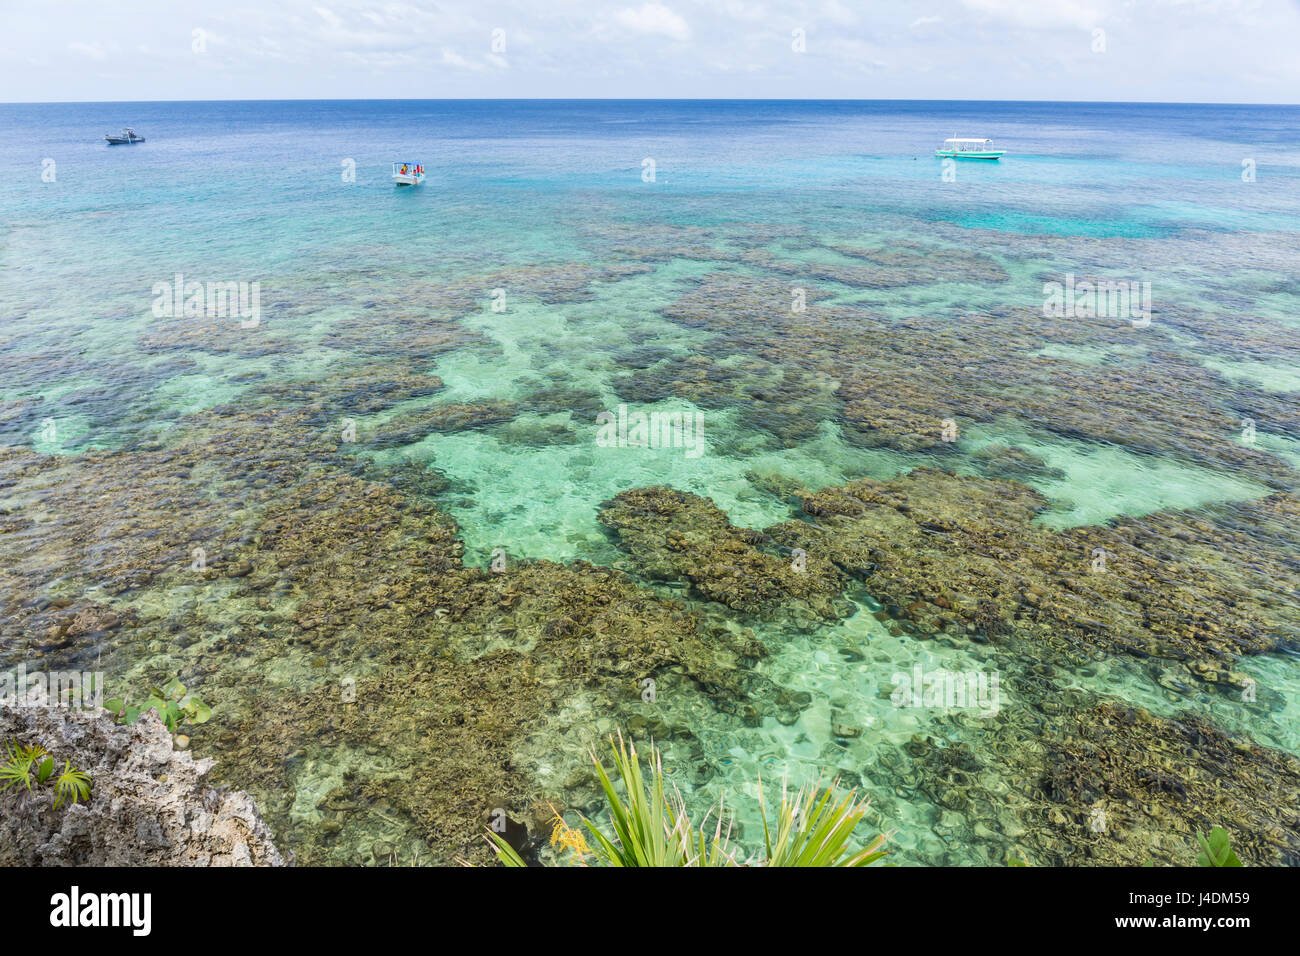 Los barcos de buceo en las aguas cristalinas cercanas a la costa de hierro de la barrera de coral de Roatán en West Bay, Roatán, Honduras Foto de stock